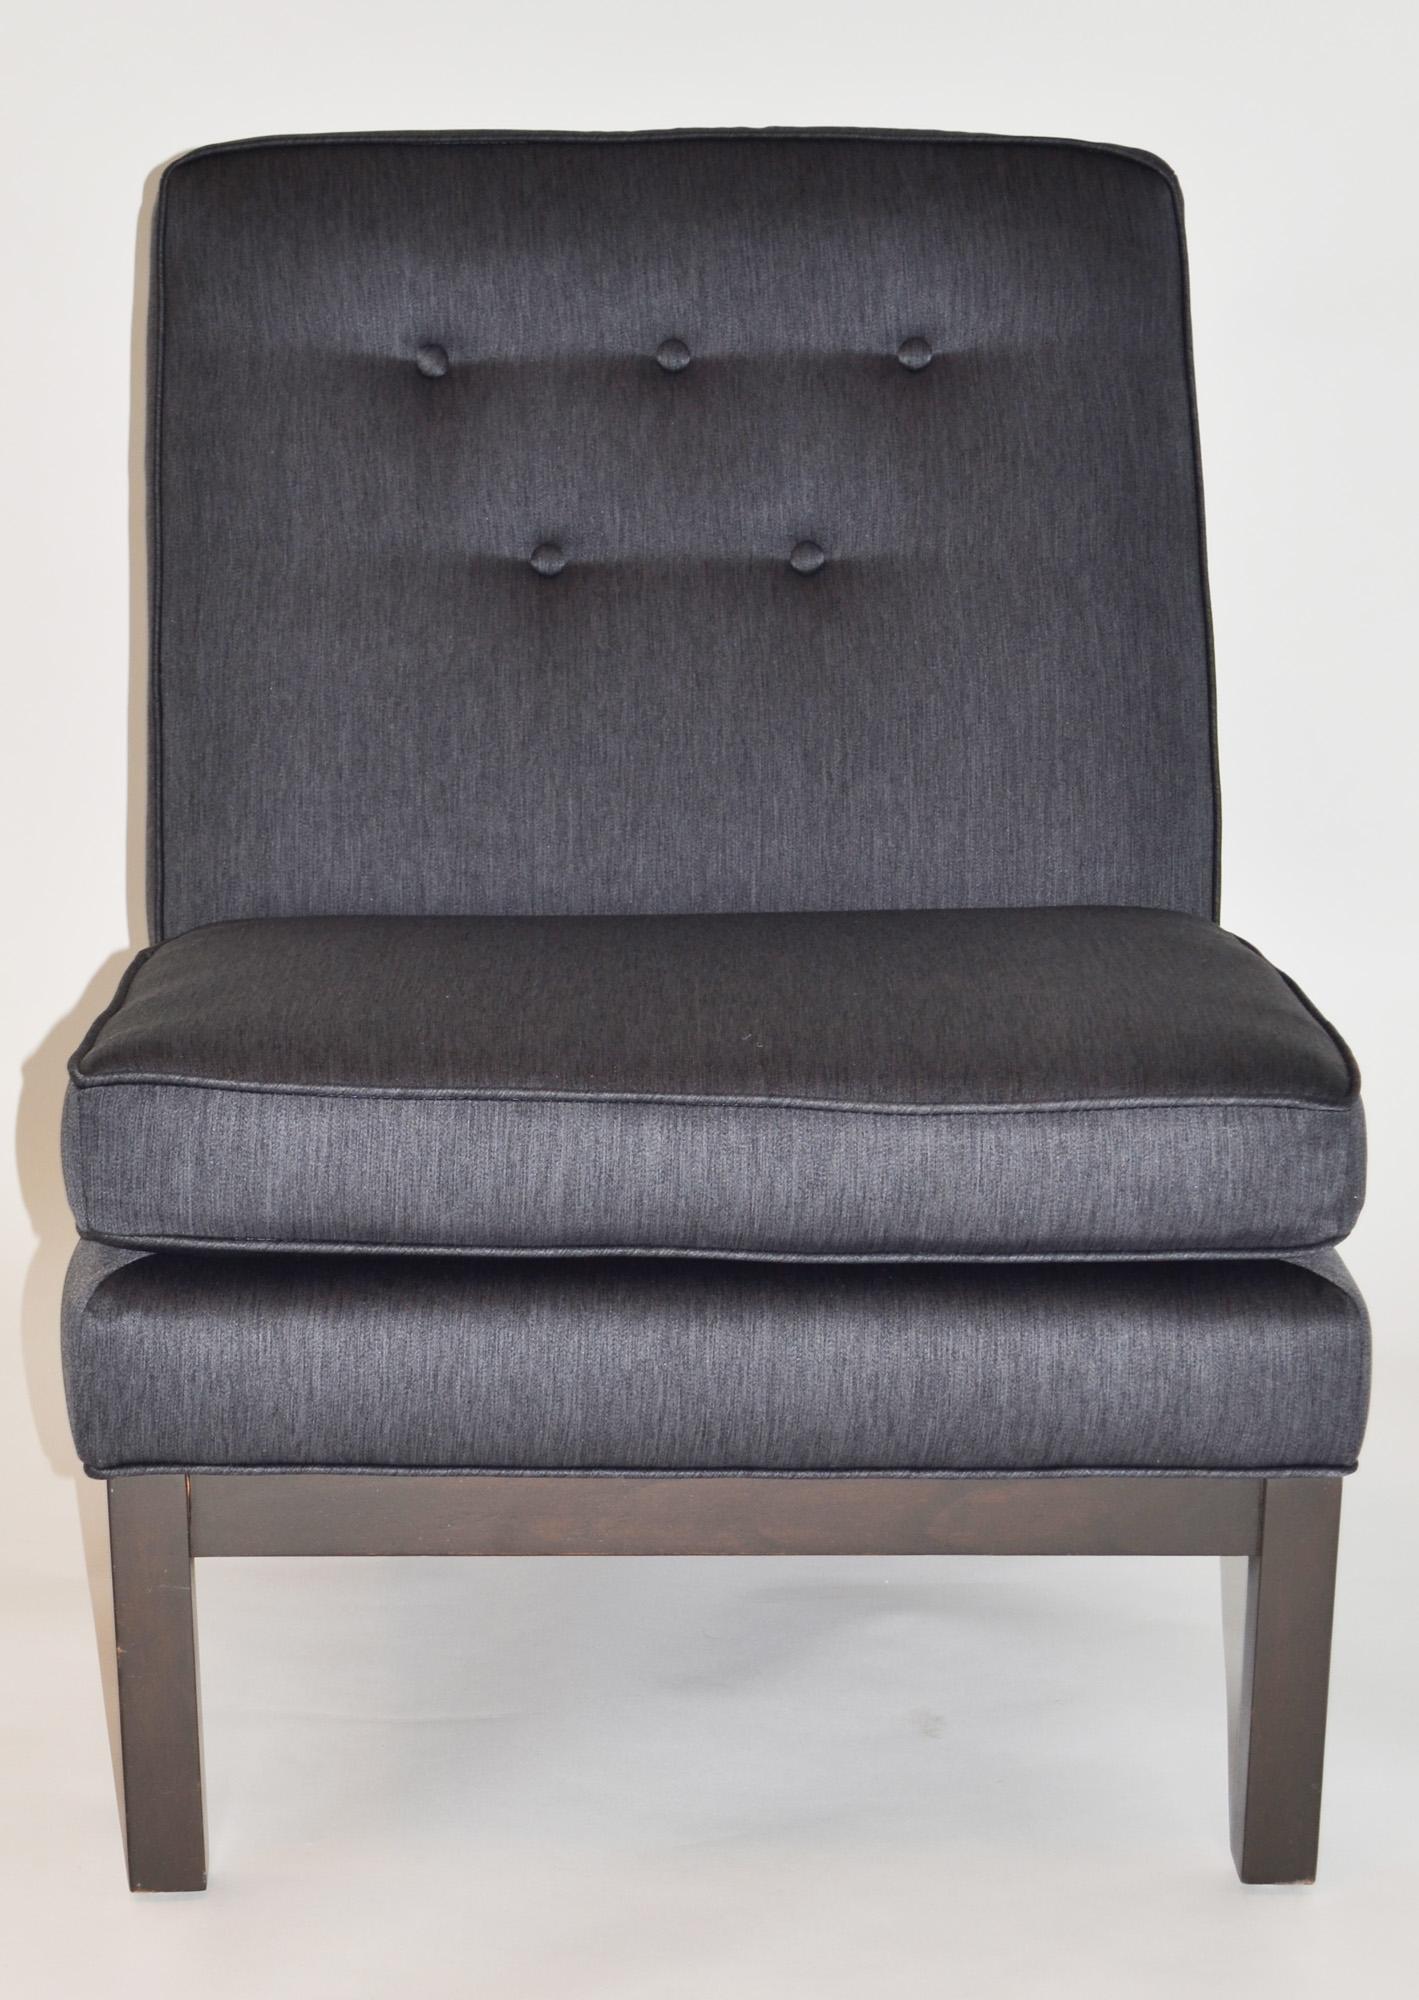 Paire de chaises longues en forme de pantalon par Kipp Stewart pour Directional, années 1960 
Nouvellement tapissé en tissu de coton gris ardoise / indigo foncé avec dossier à cinq boutons et coussins attachés, avec une base en noyer de finition